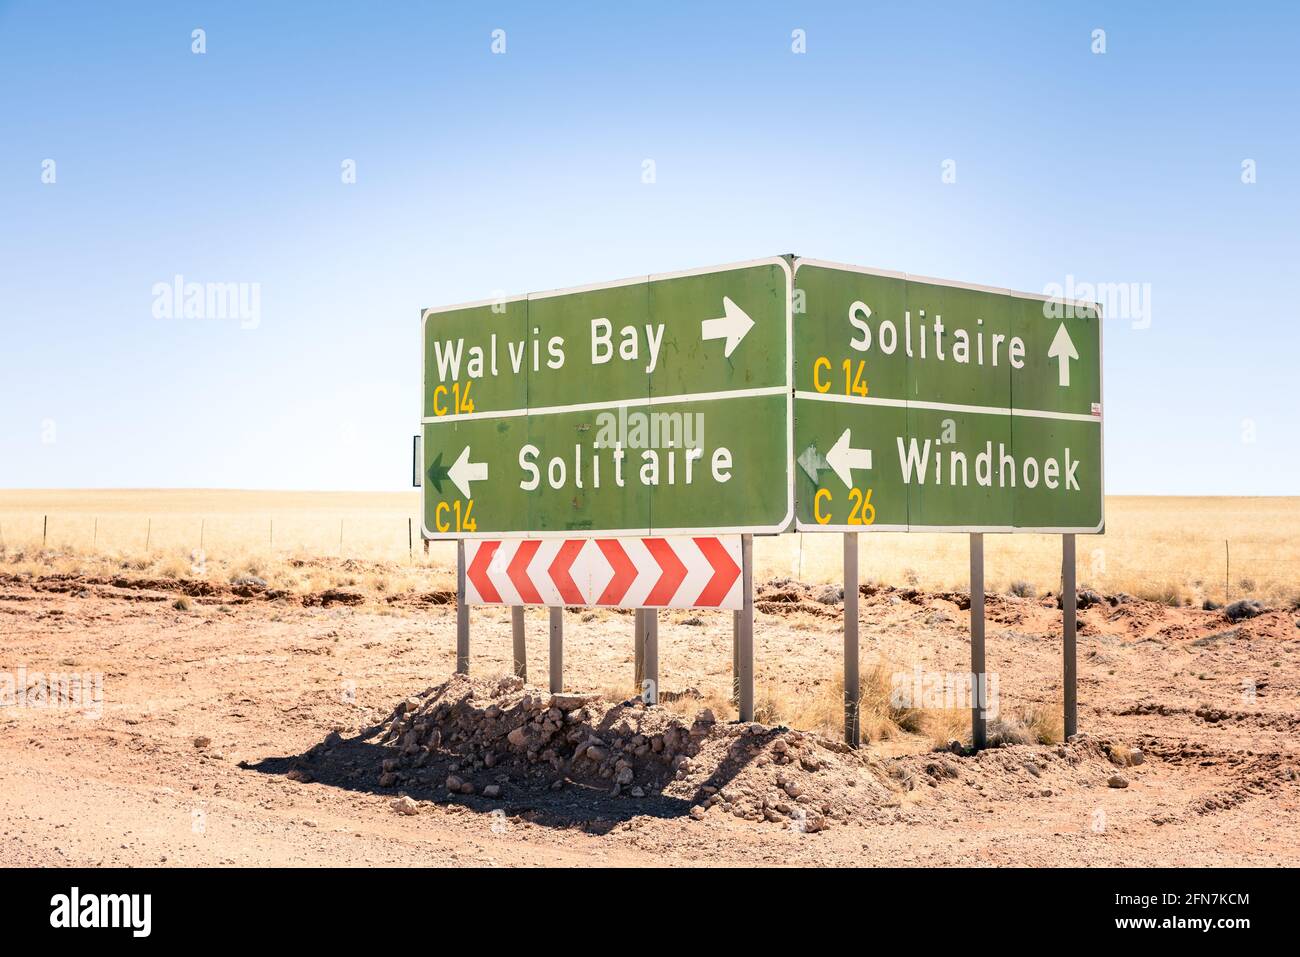 Panneaux routiers multiples en Namibie - Walvis Bay - Solitaire - Windhoek - Desert Streets à des destinations de voyage exclusives Banque D'Images